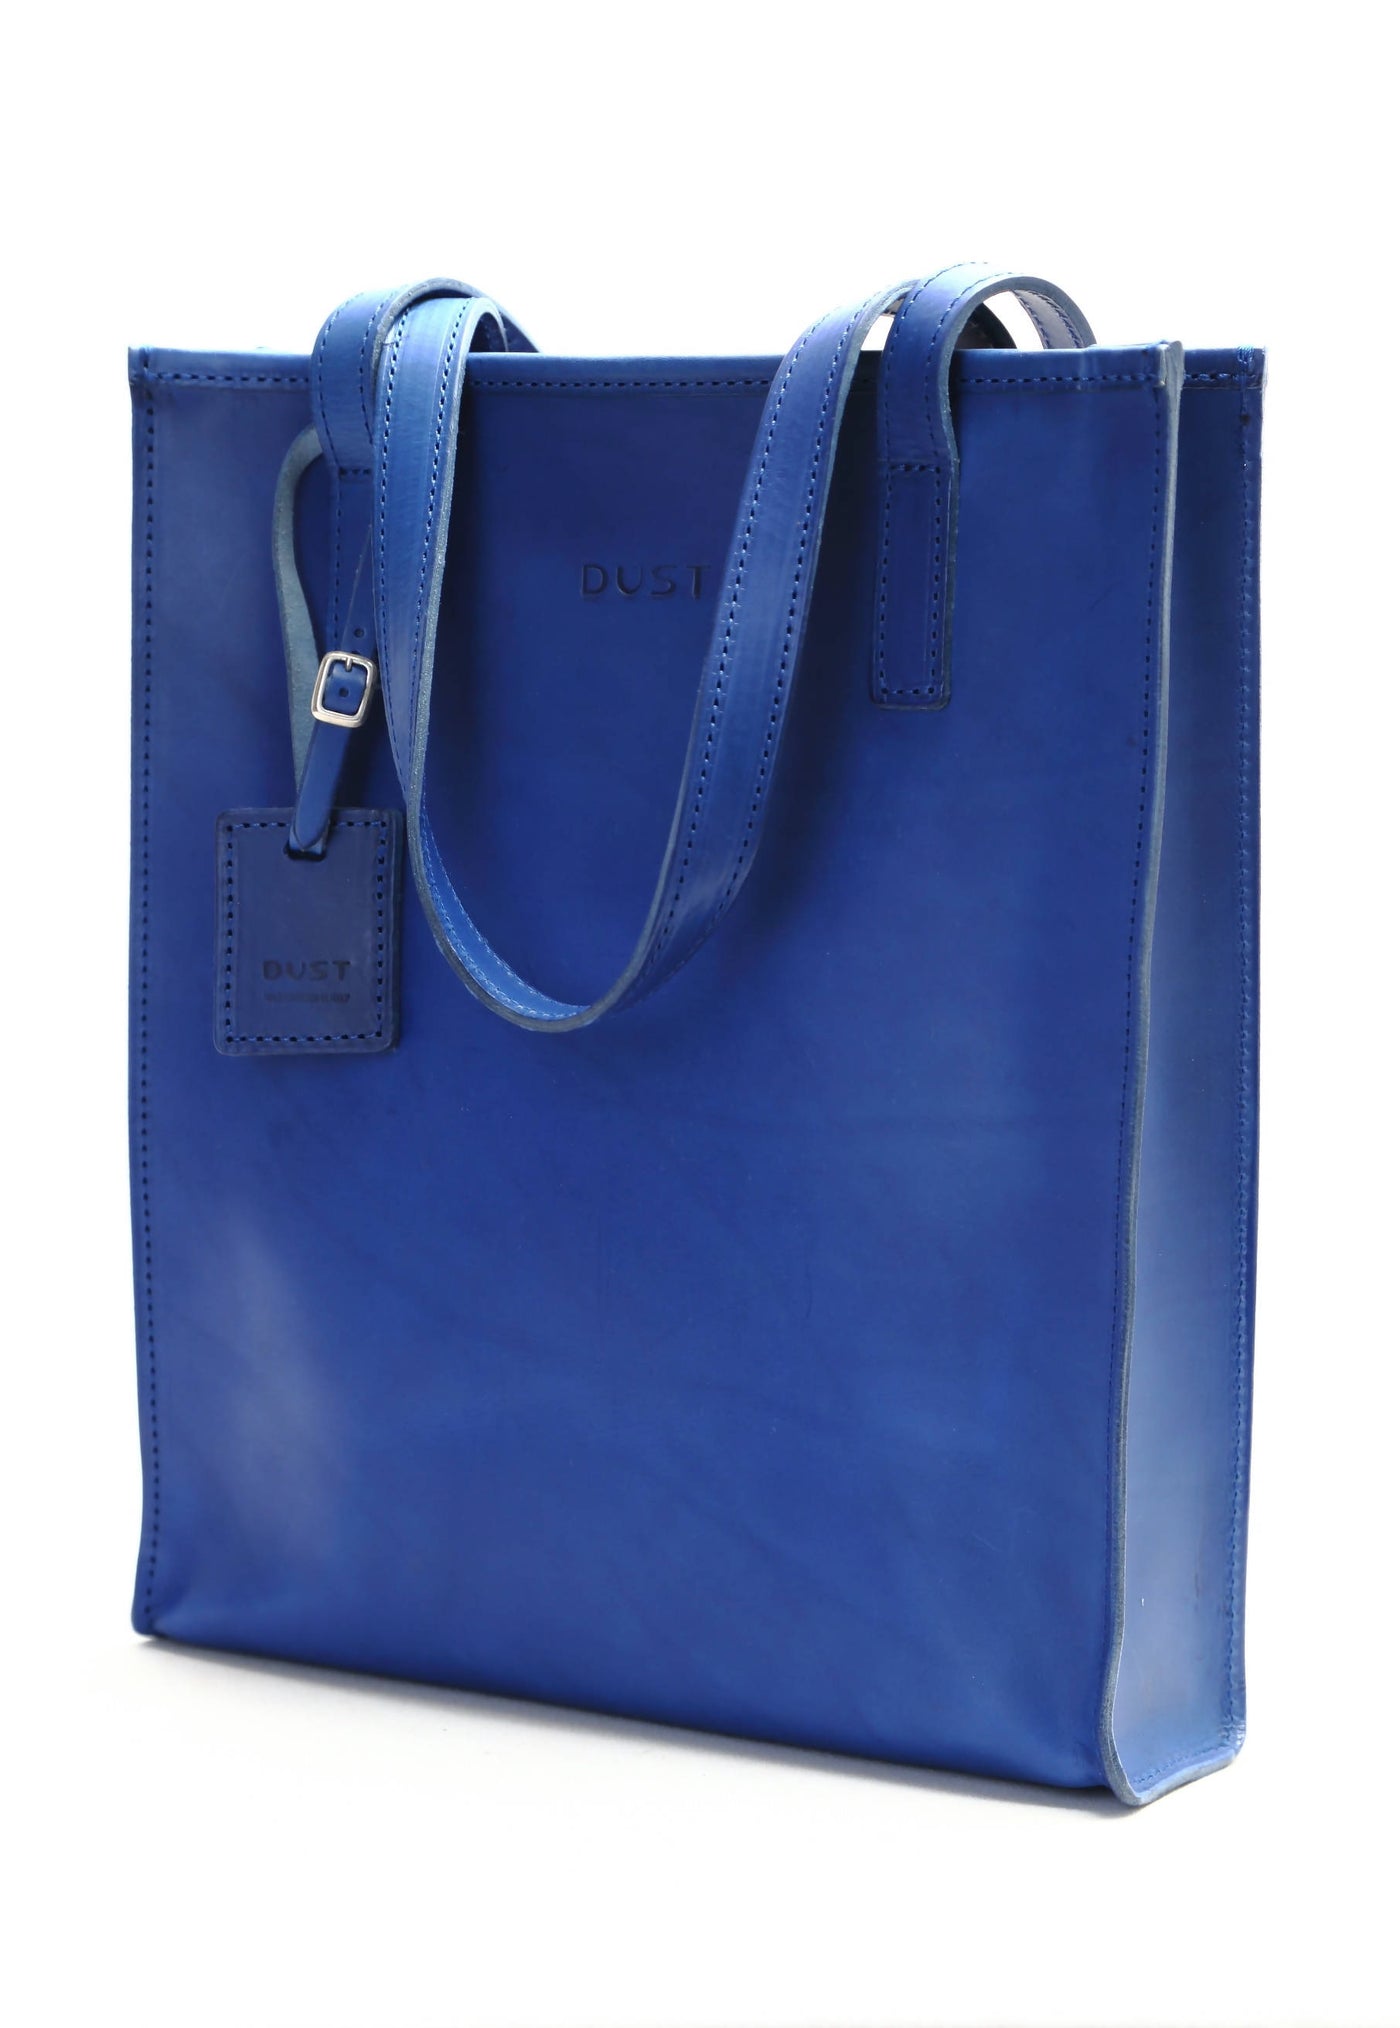 Tote bag en cuir bleu - Mod 105 - Image 4